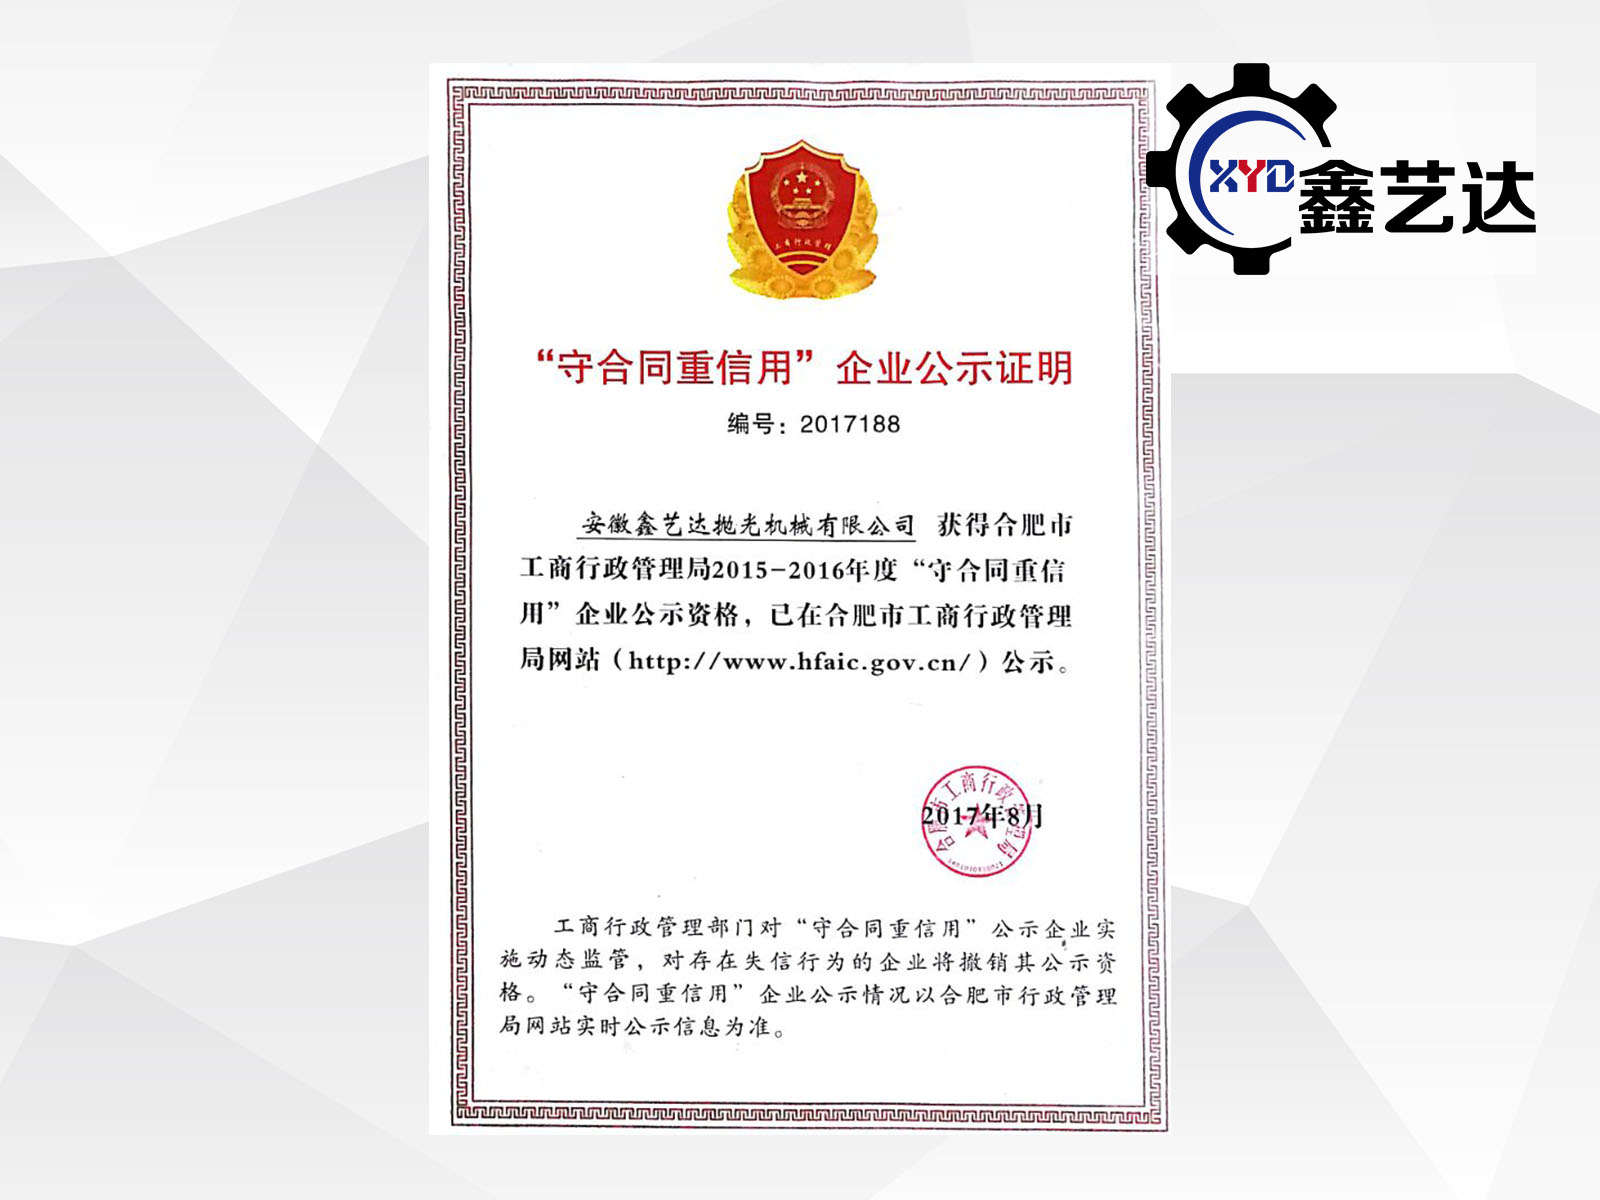 Trustworthy Enterprise Certificate(2)